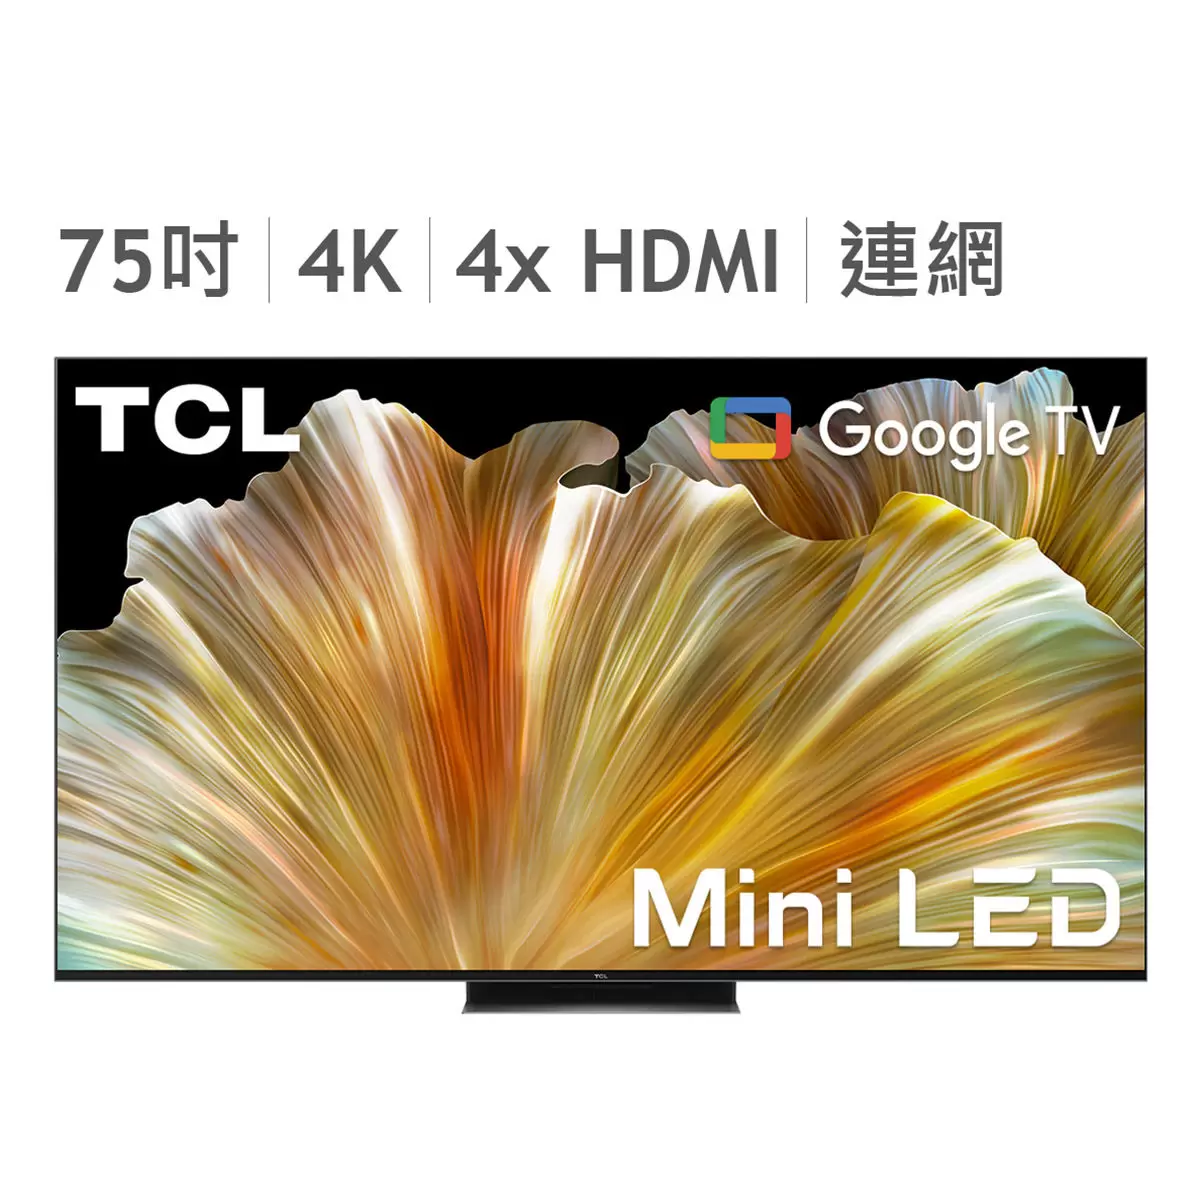 TCL 75吋 4K Mini LED Google TV 量子智能連網液晶顯示器不含視訊盒 75C835